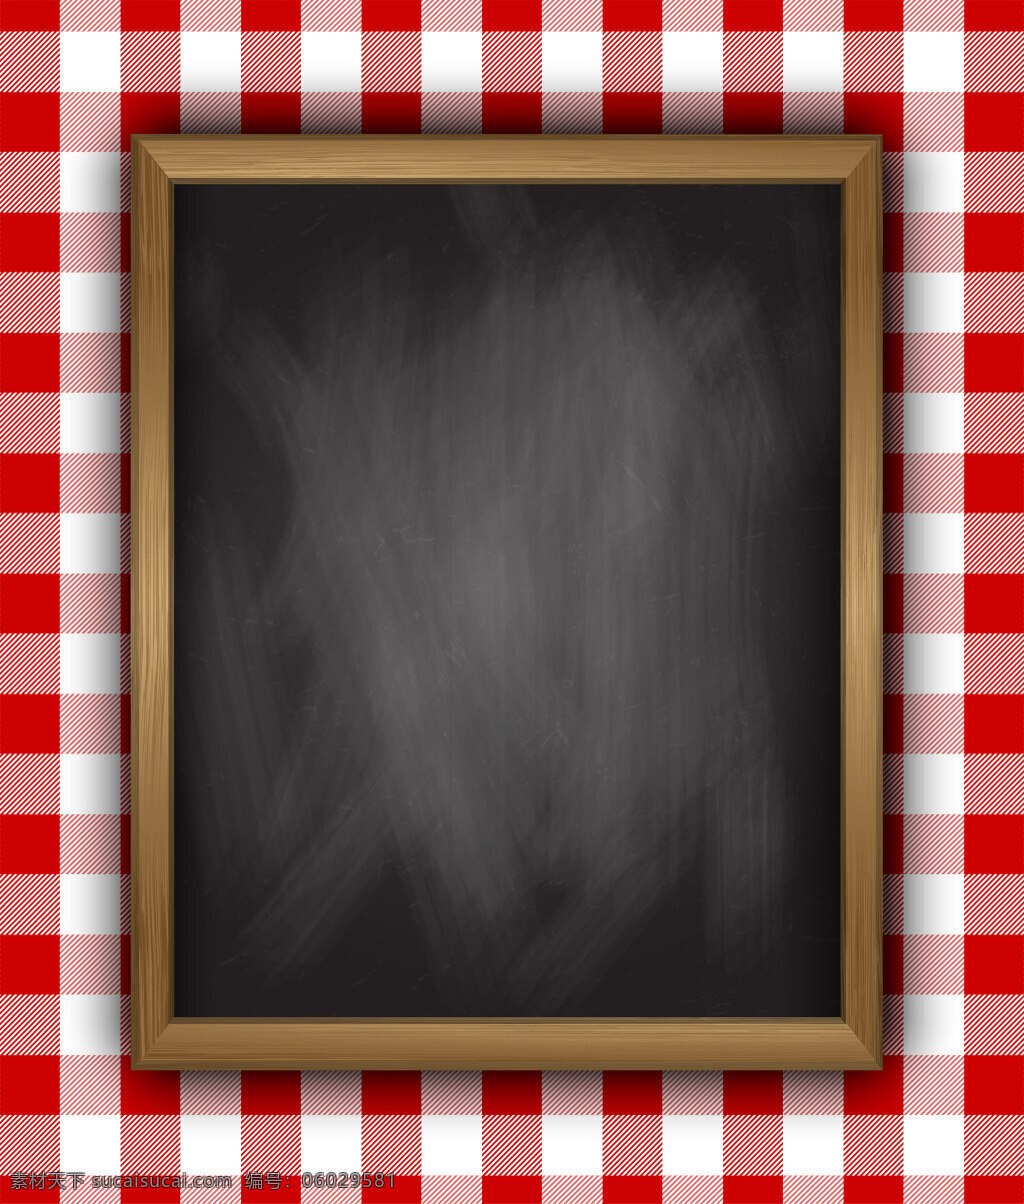 矢量 红 格子 桌布 黑板 立体 背景 文艺 红格子 纹理 质感 海报